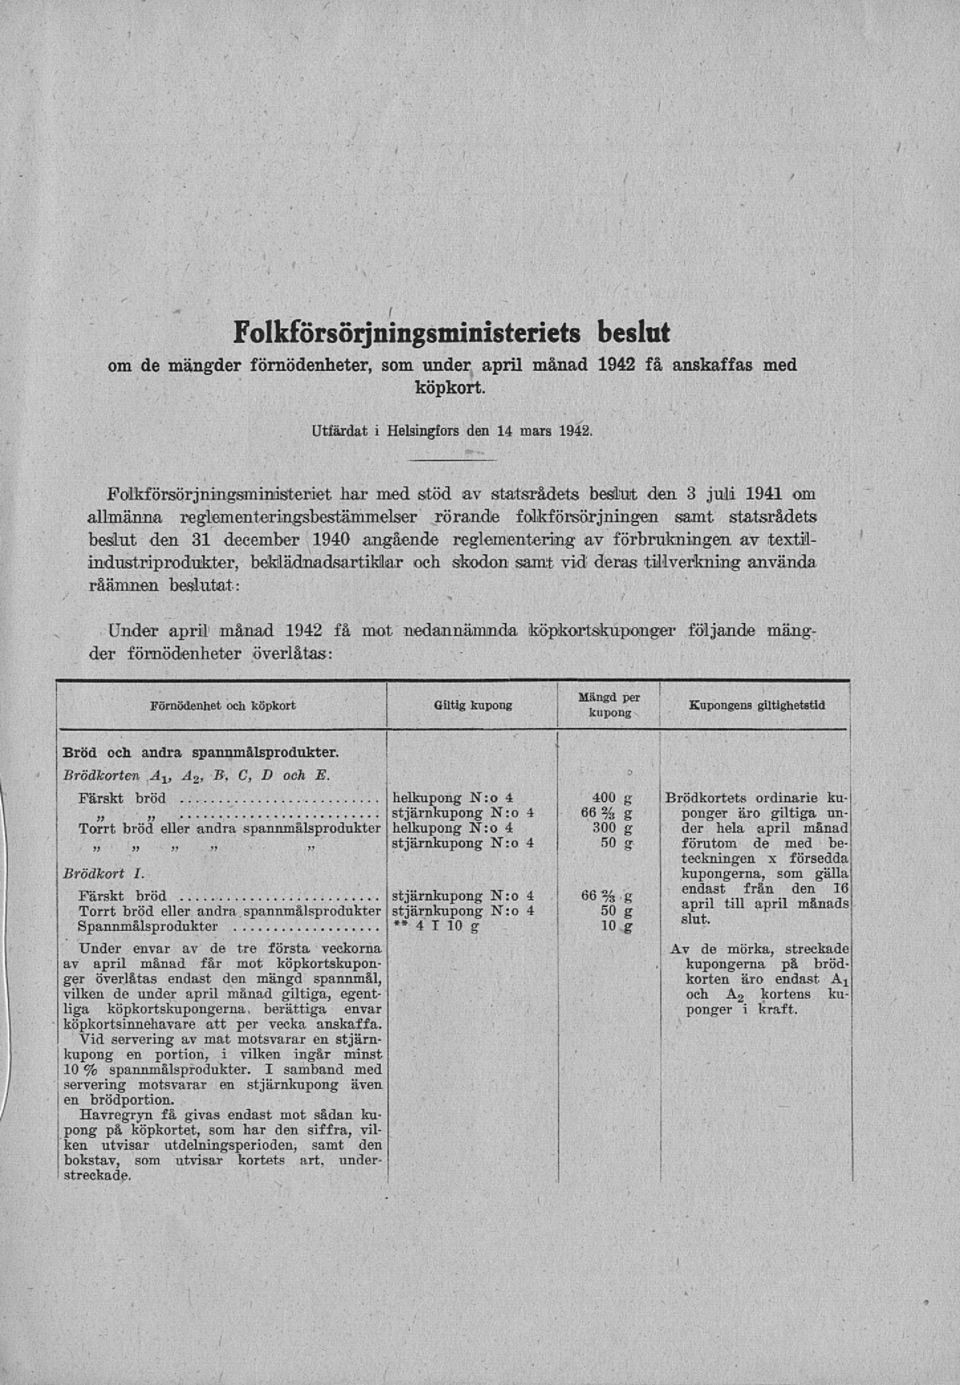 folkförsörjningen samt statsrådets beslut den 31 december 1940 angående reglementering av förbrukningen av textilindustmprodukter, bemädnadsartimar och skodon samt vid deras tillverkning använda